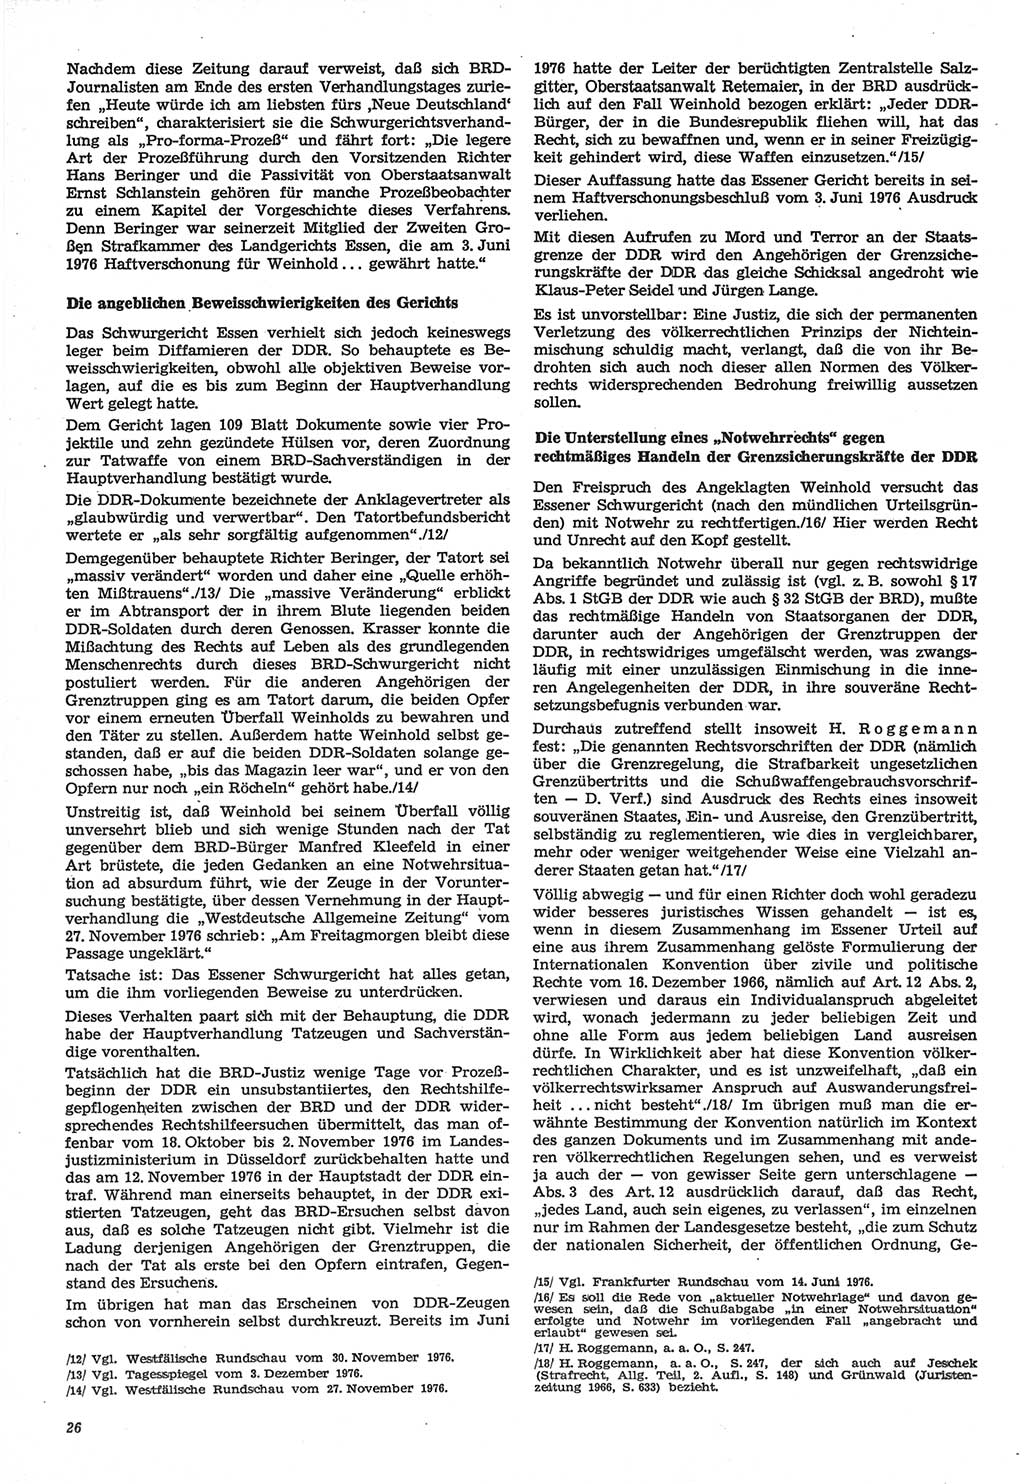 Neue Justiz (NJ), Zeitschrift für Recht und Rechtswissenschaft-Zeitschrift, sozialistisches Recht und Gesetzlichkeit, 31. Jahrgang 1977, Seite 26 (NJ DDR 1977, S. 26)